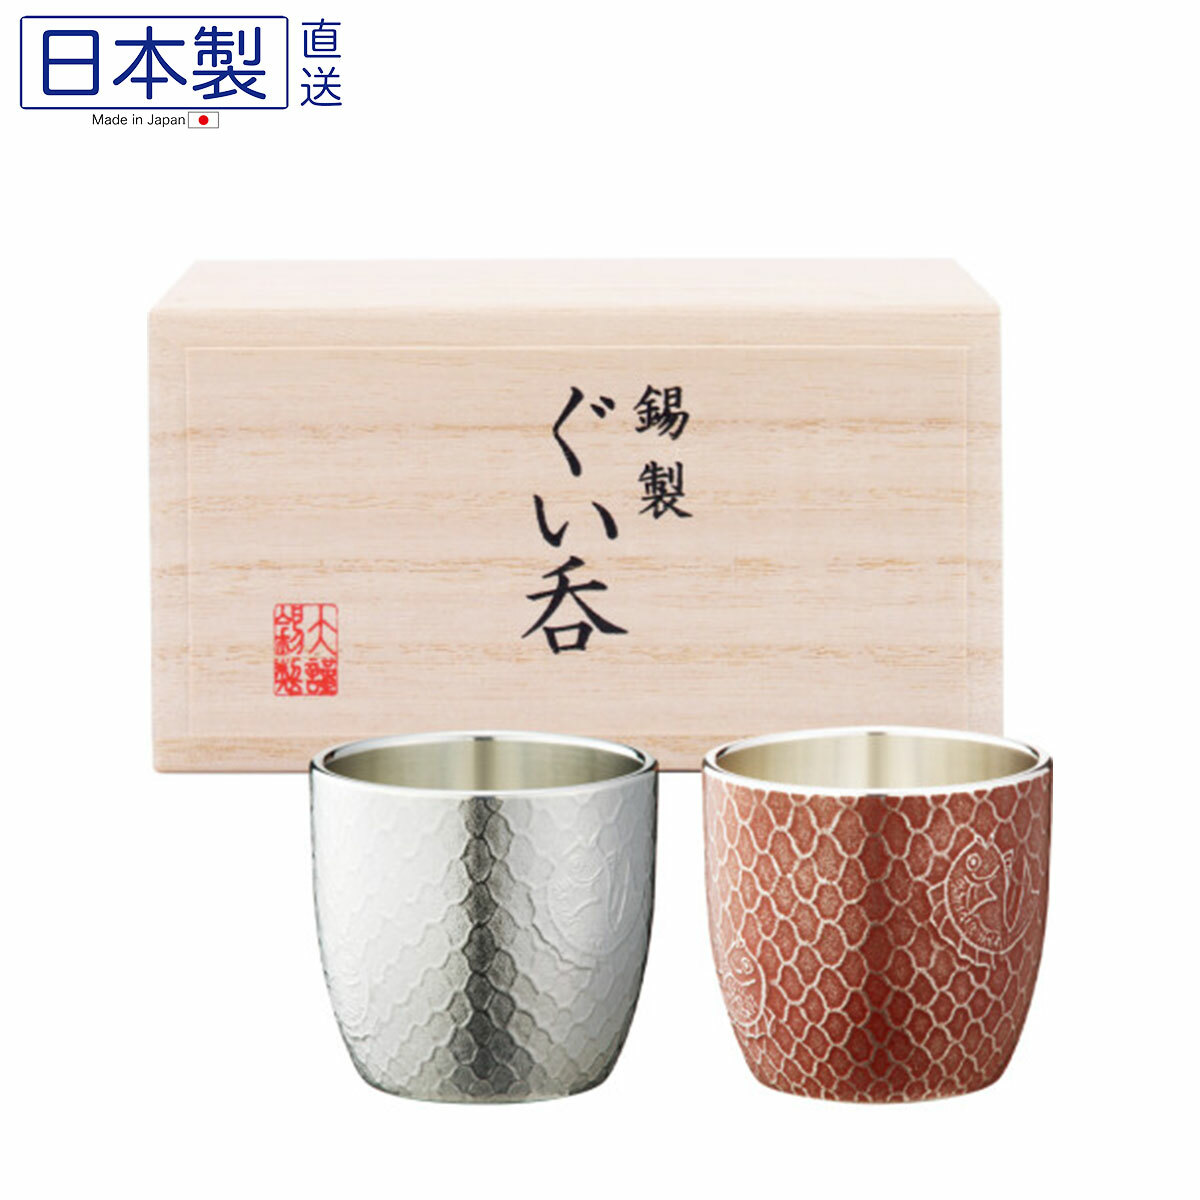 日本大阪浪華錫器鍚杯套裝55ML (2枚入) (日本製)